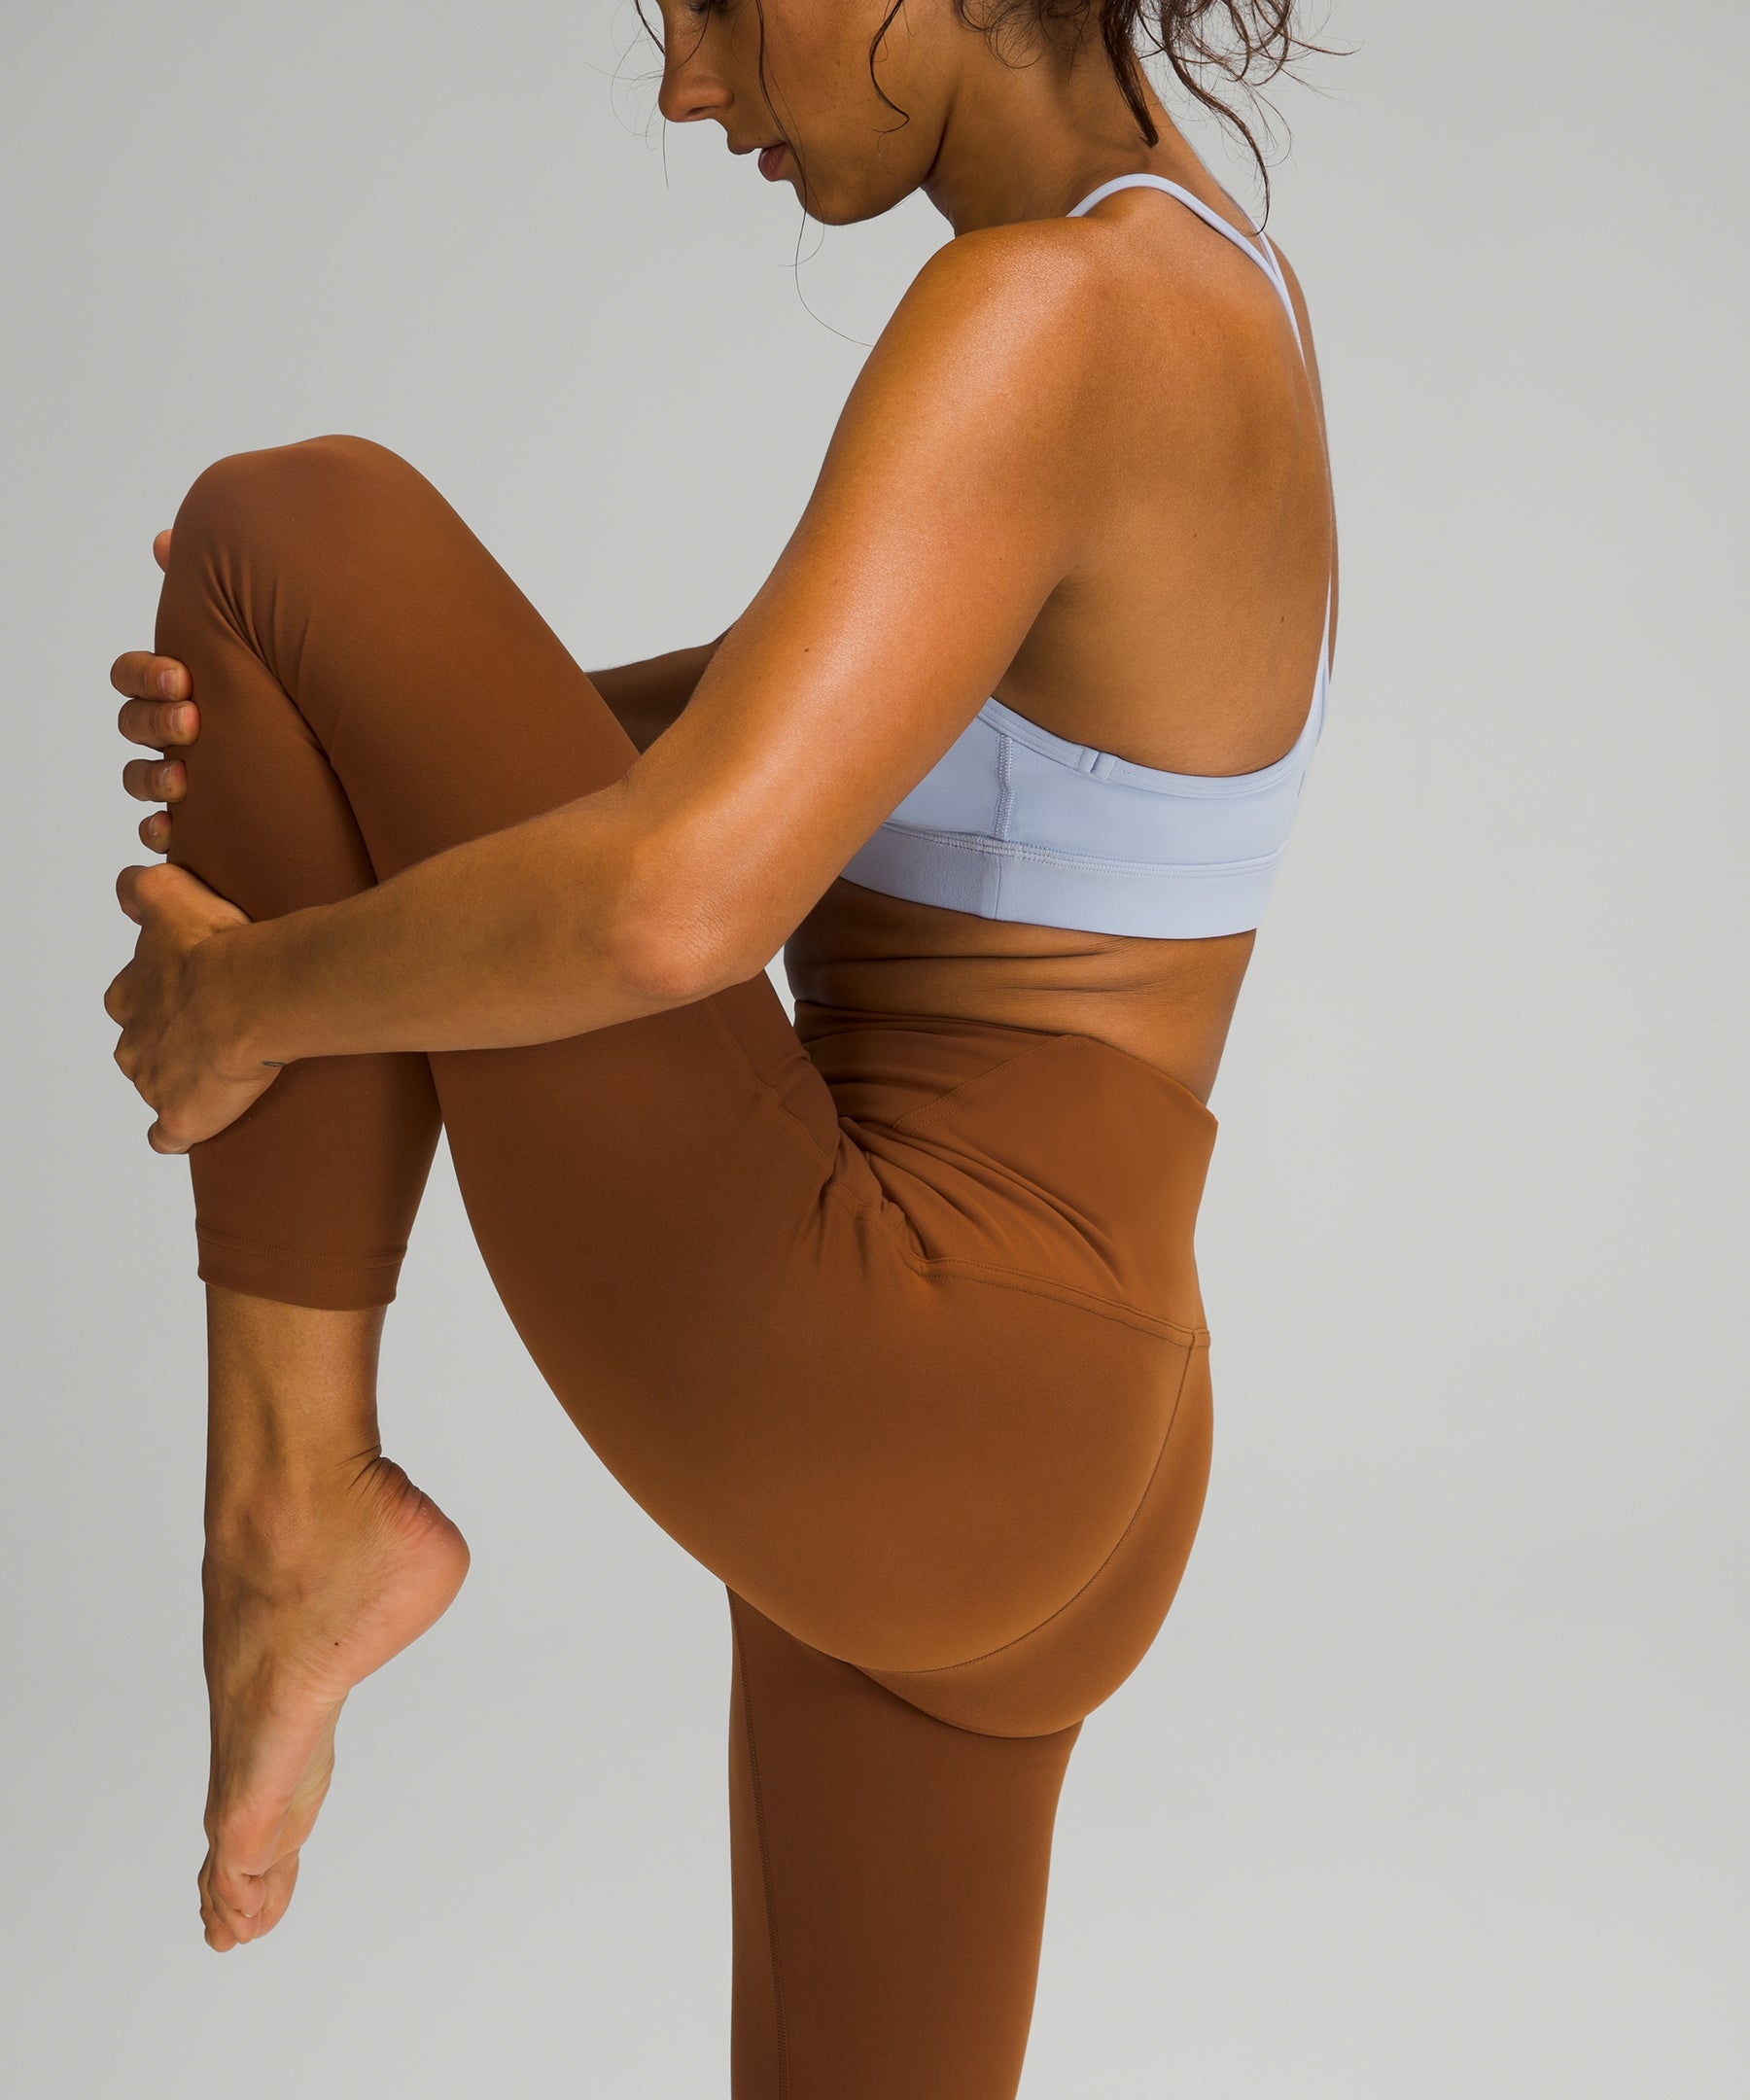 Lululemon Instill Tight Workout Leggings For Yoga 2021